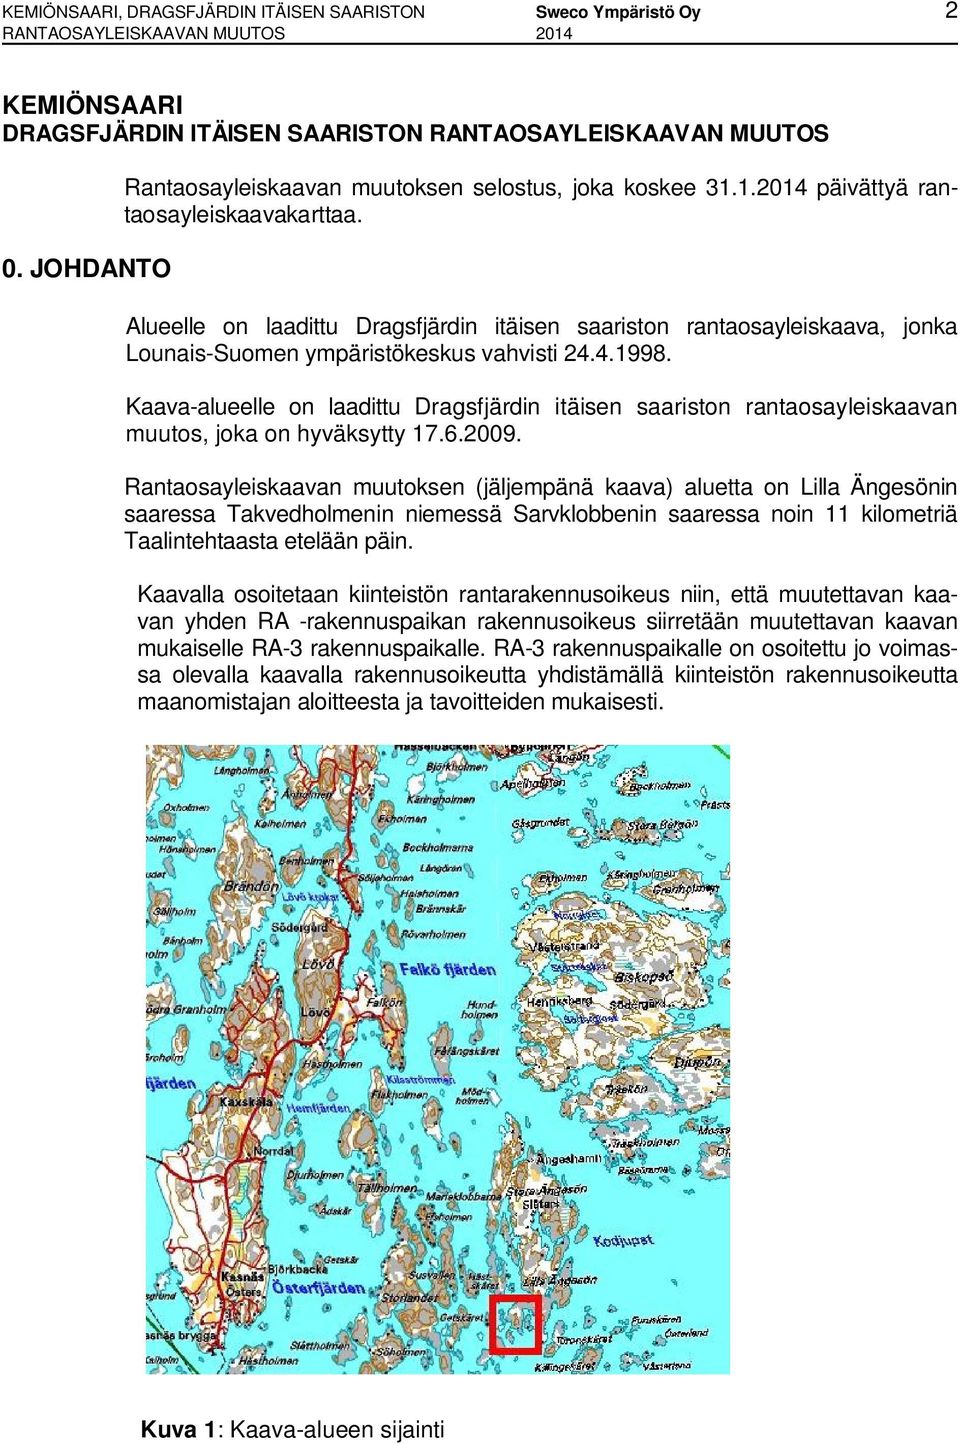 Alueelle on laadittu Dragsfjärdin itäisen saariston rantaosayleiskaava, jonka Lounais-Suomen ympäristökeskus vahvisti 24.4.1998.